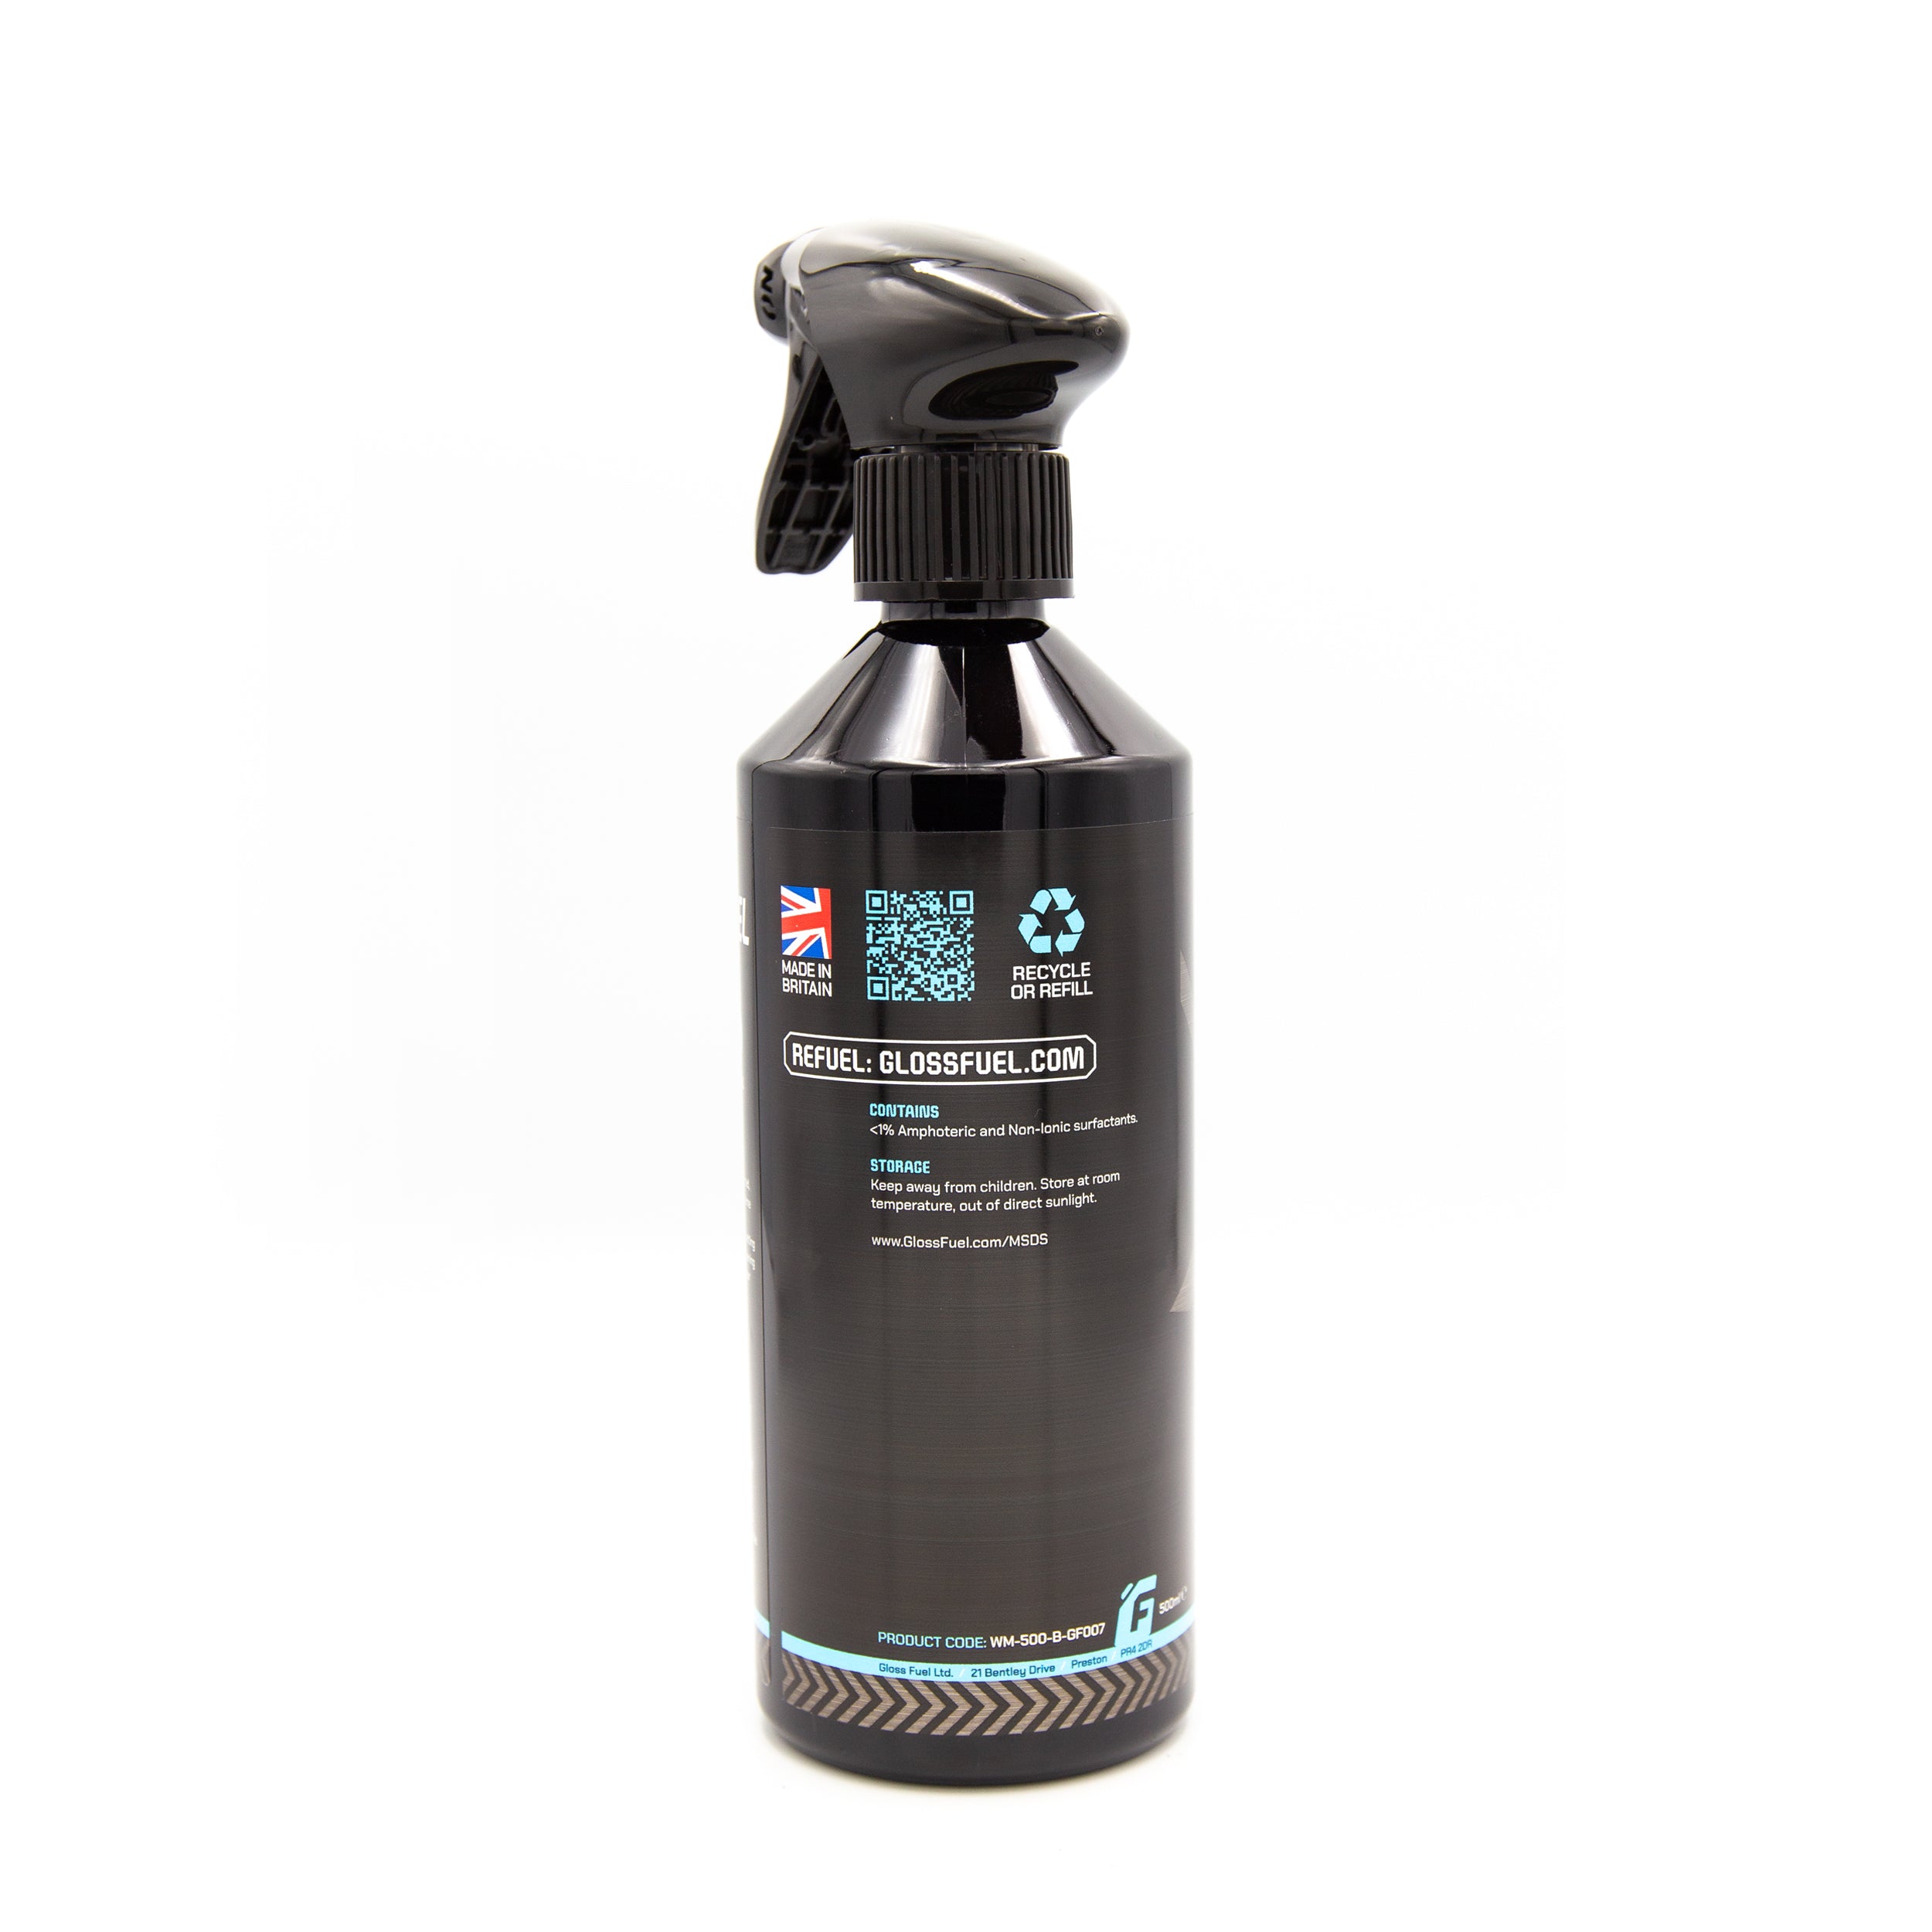 Gloss Fuel Premium Glass Cleaner - 500ml Trigger Spray Bottle